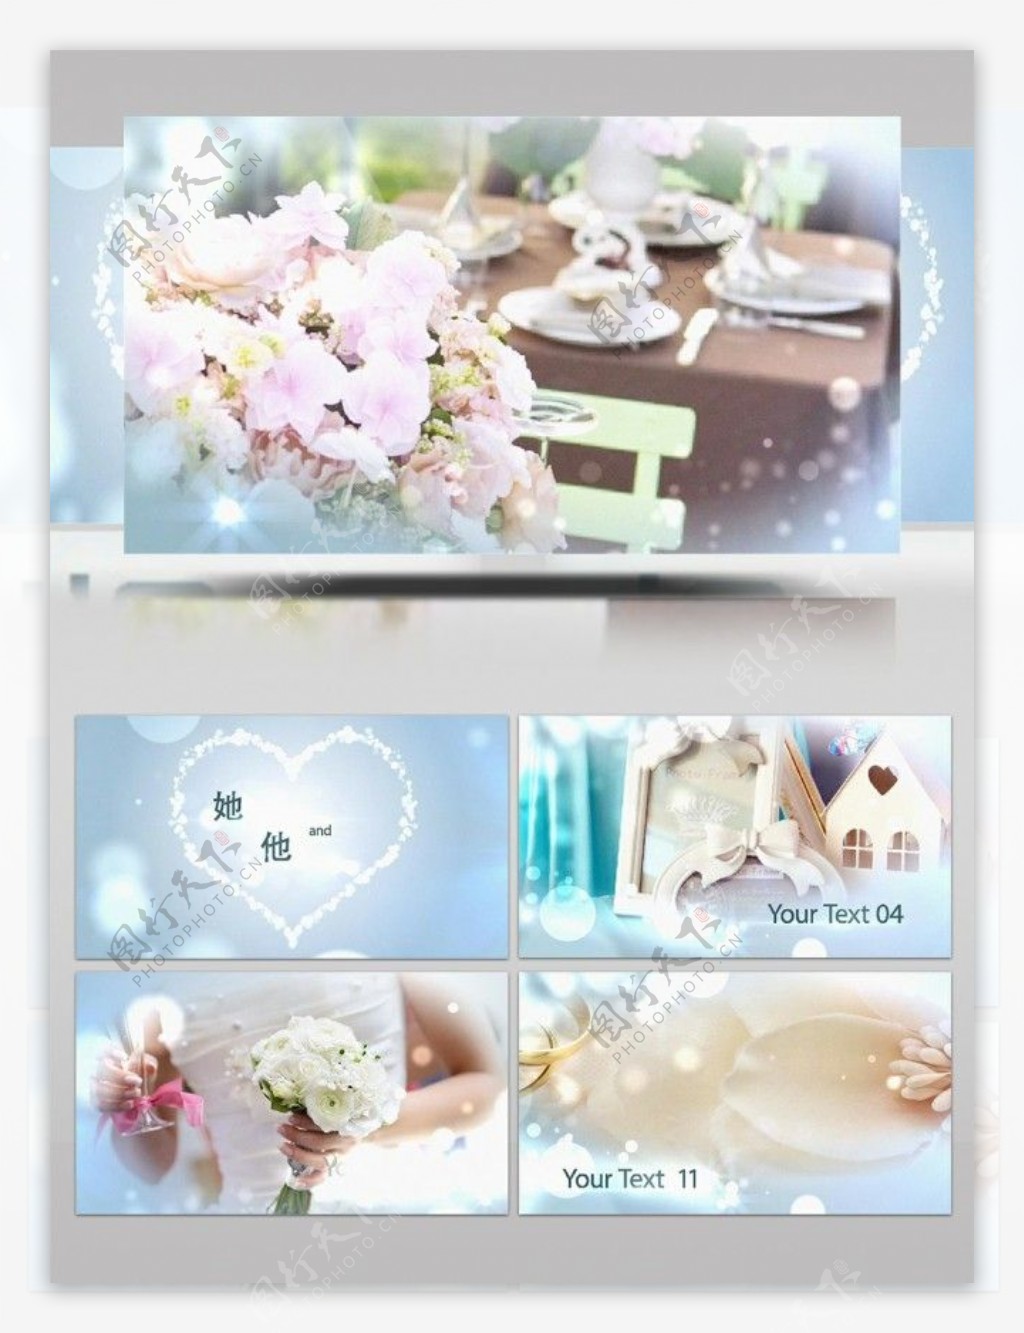 浪漫圣洁的婚礼照片展示ae模板